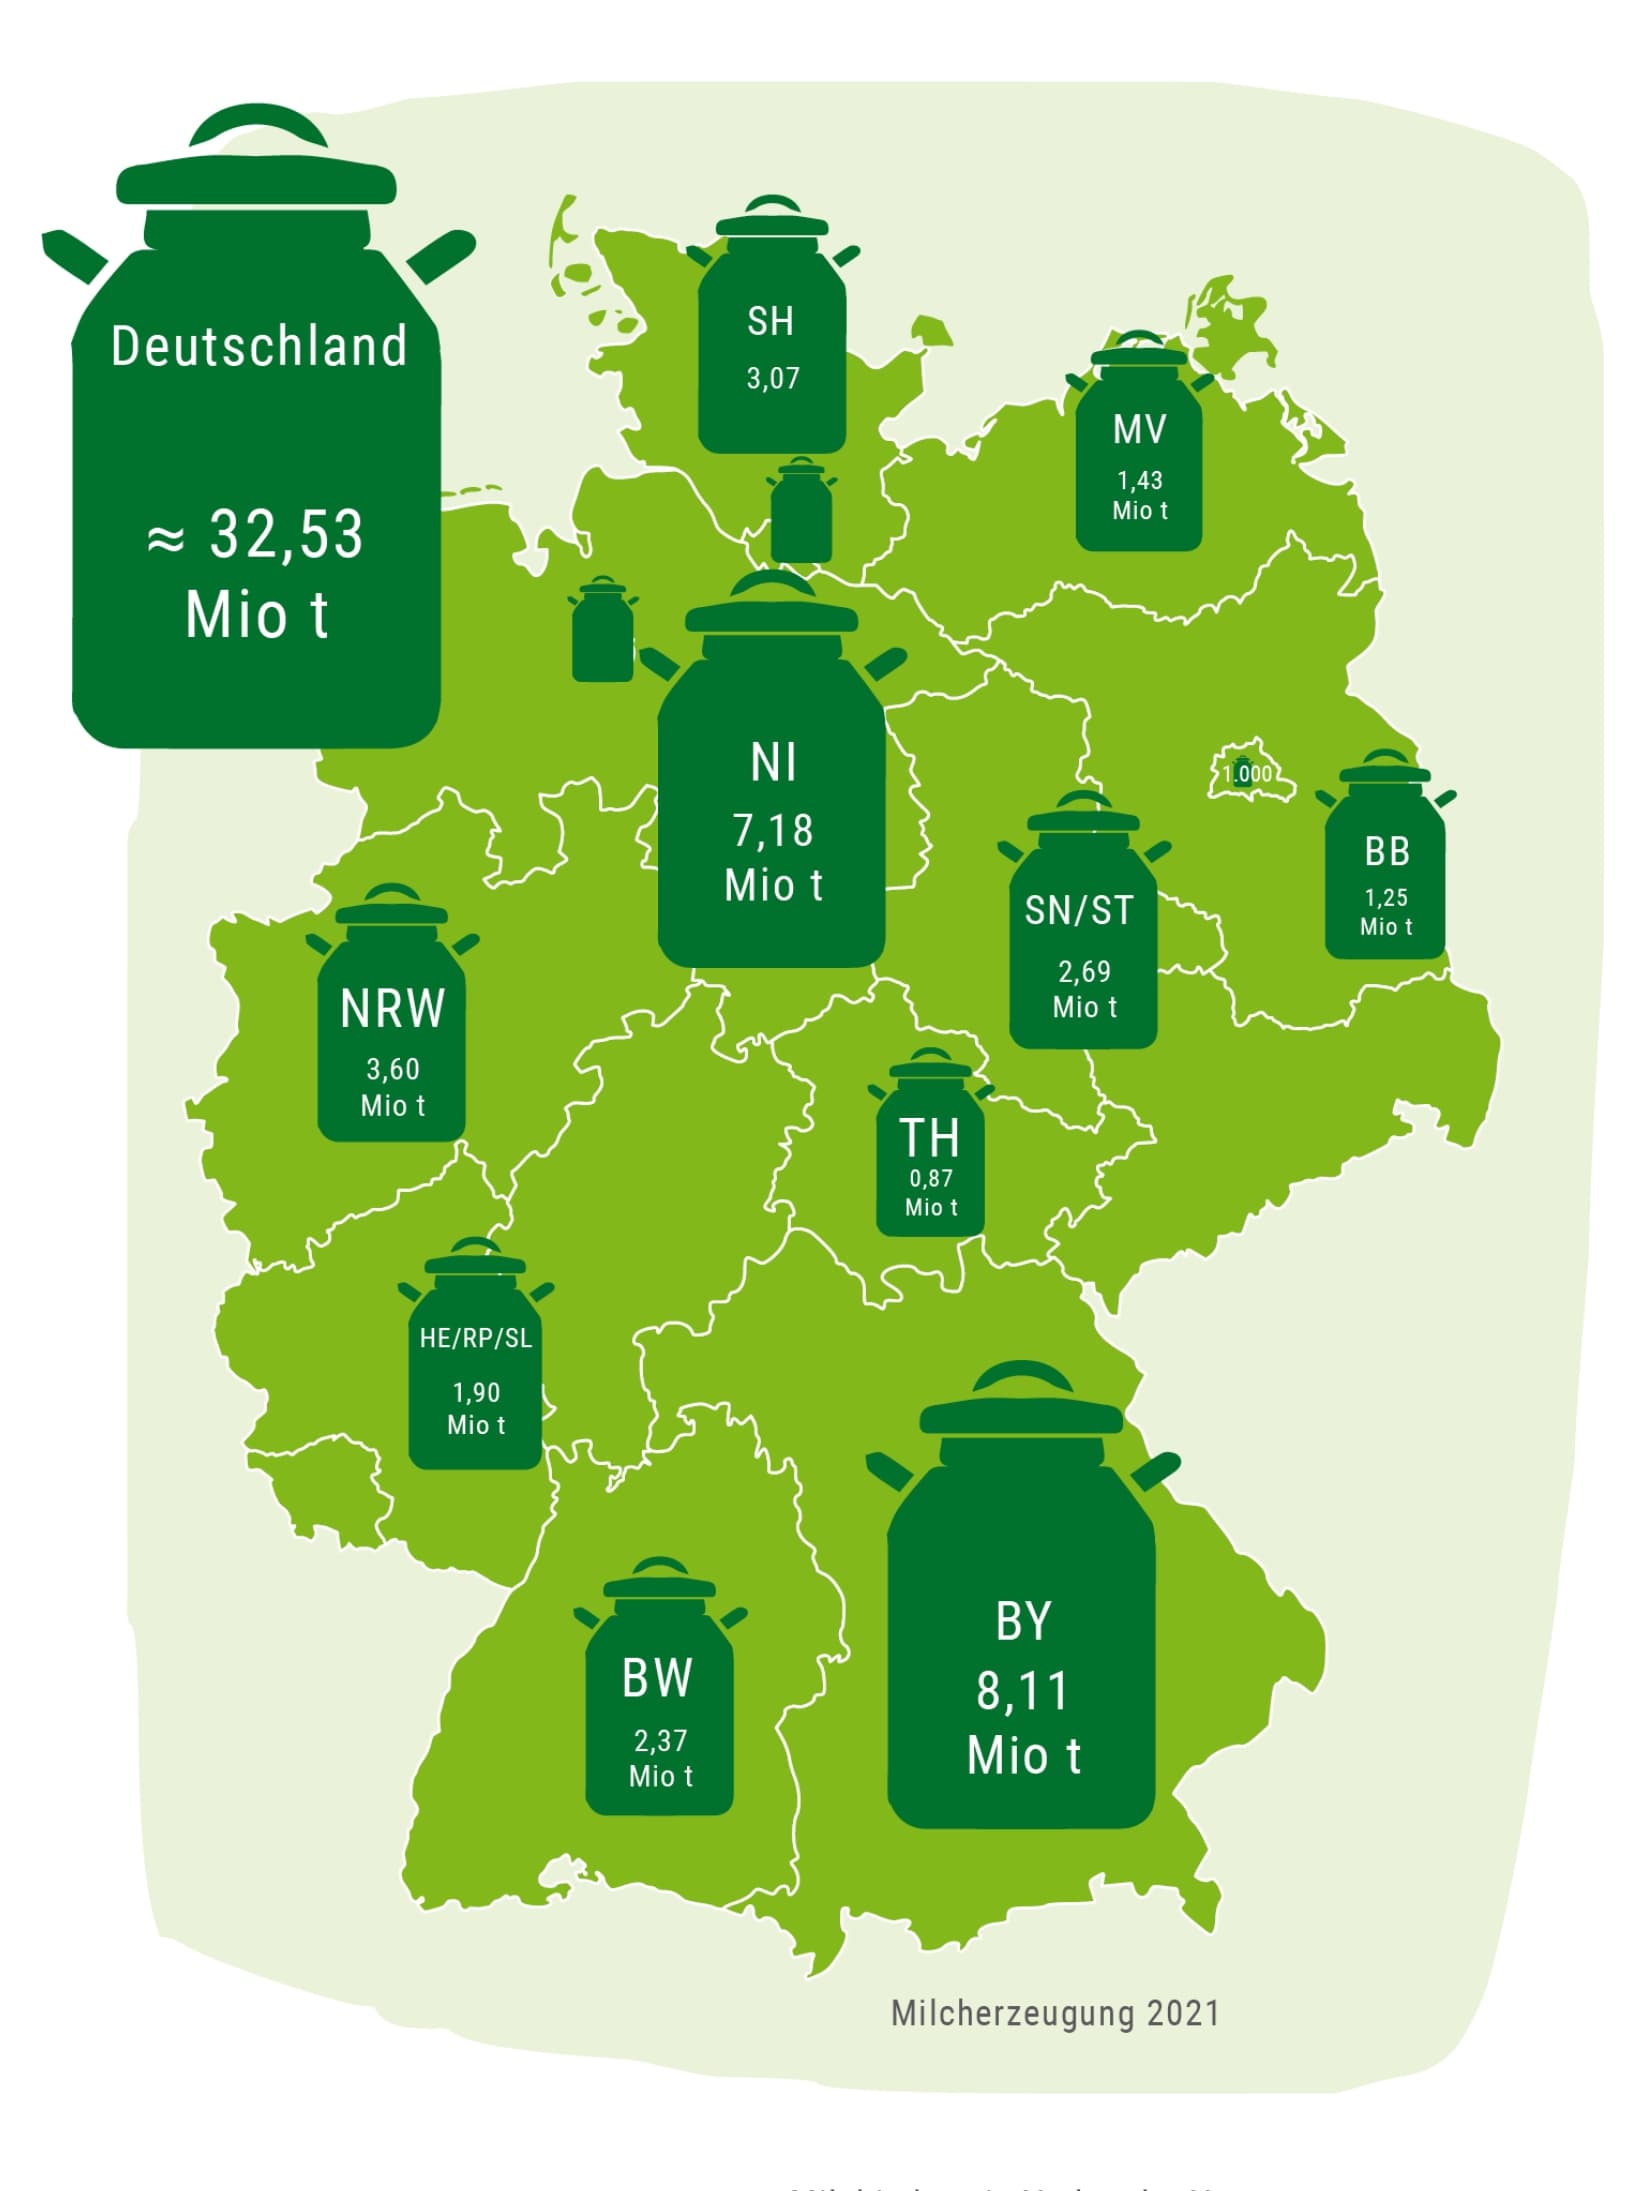 Milcherzeugung in Deutschland